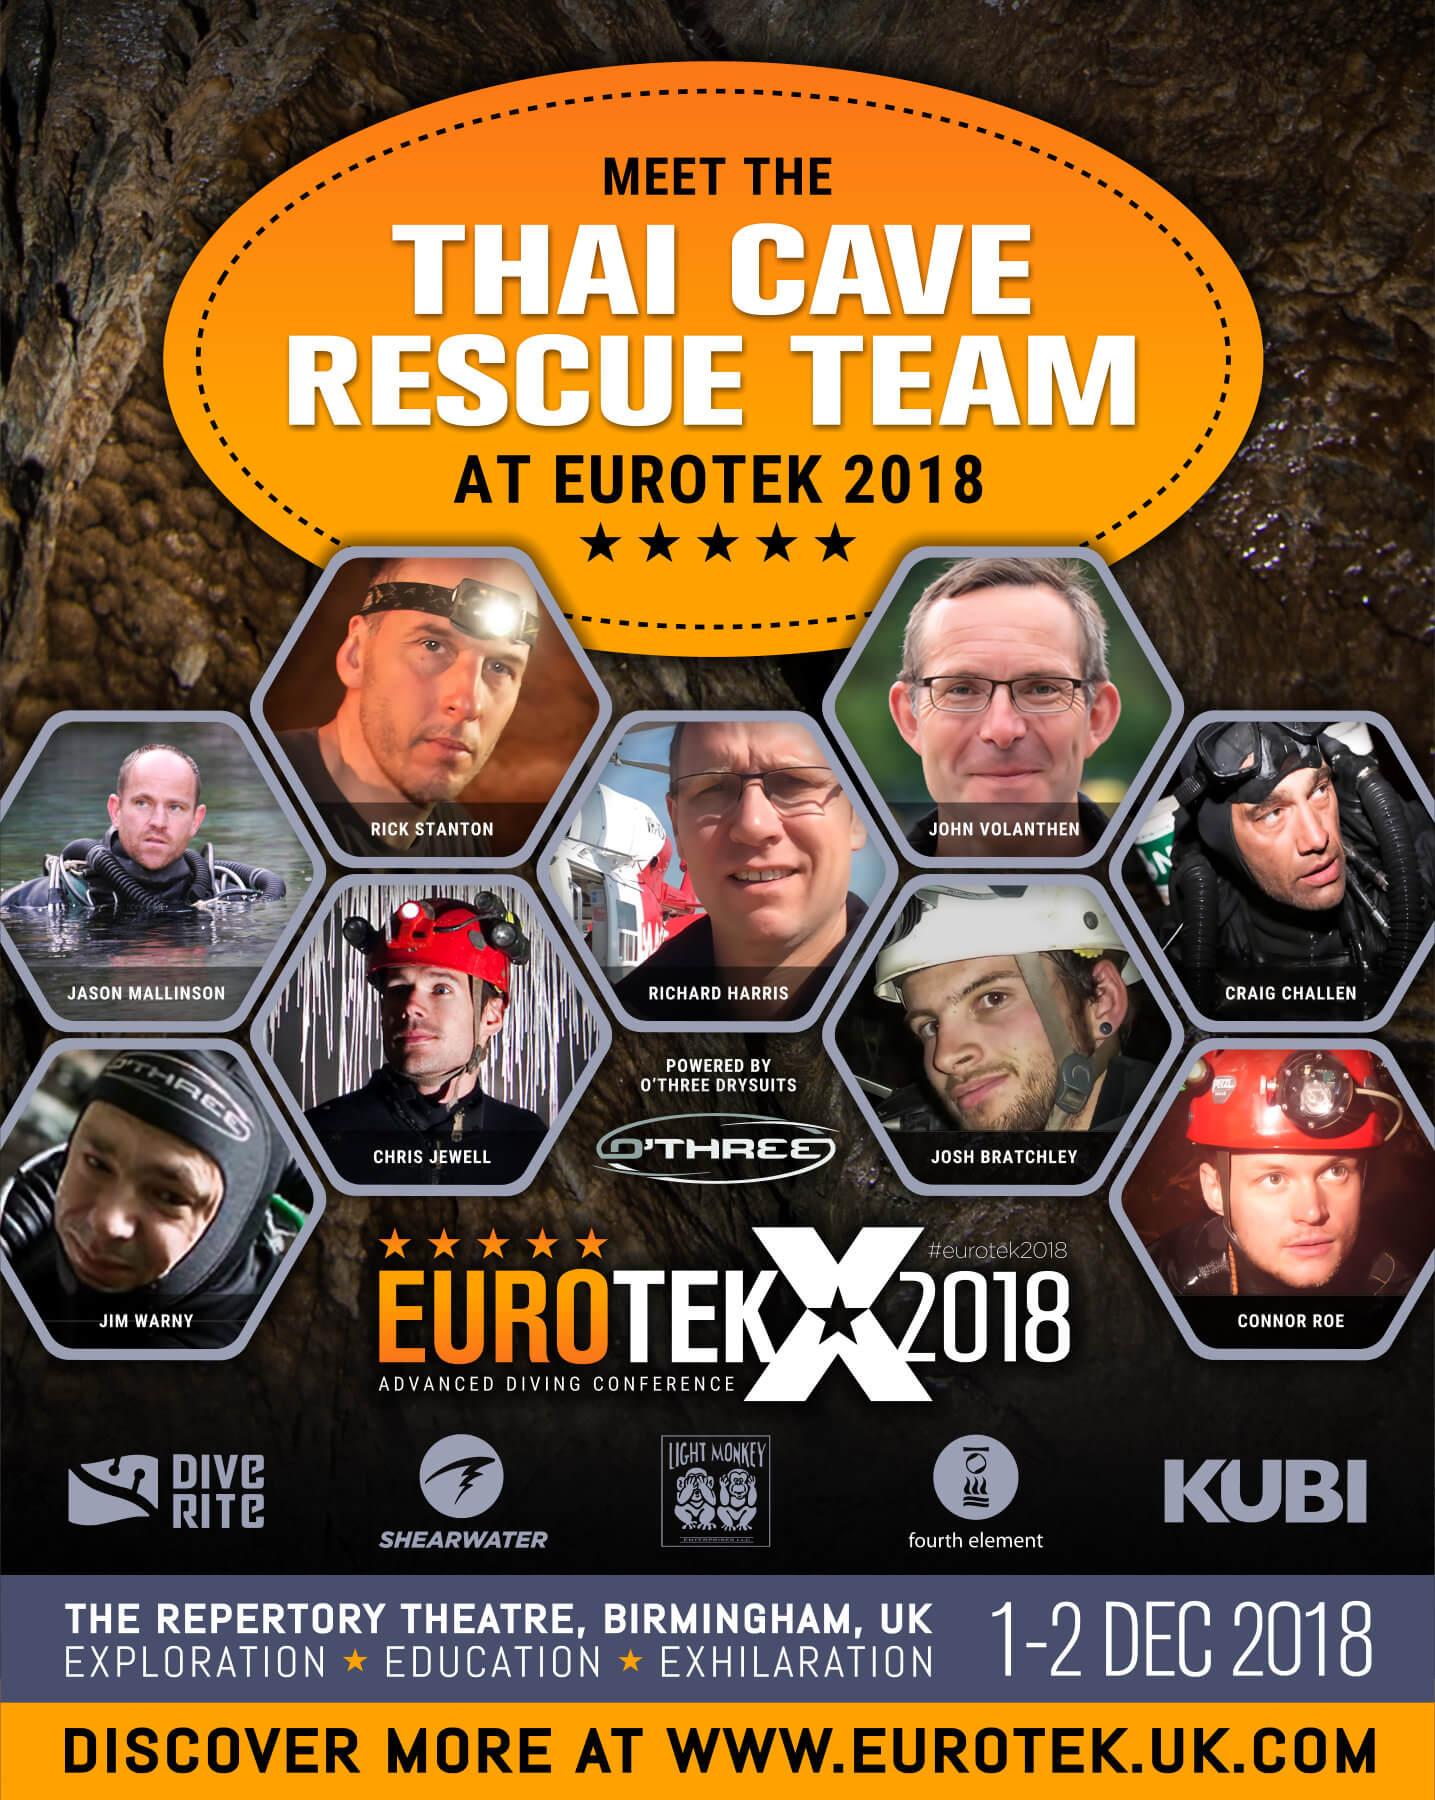 Eurotek 2018